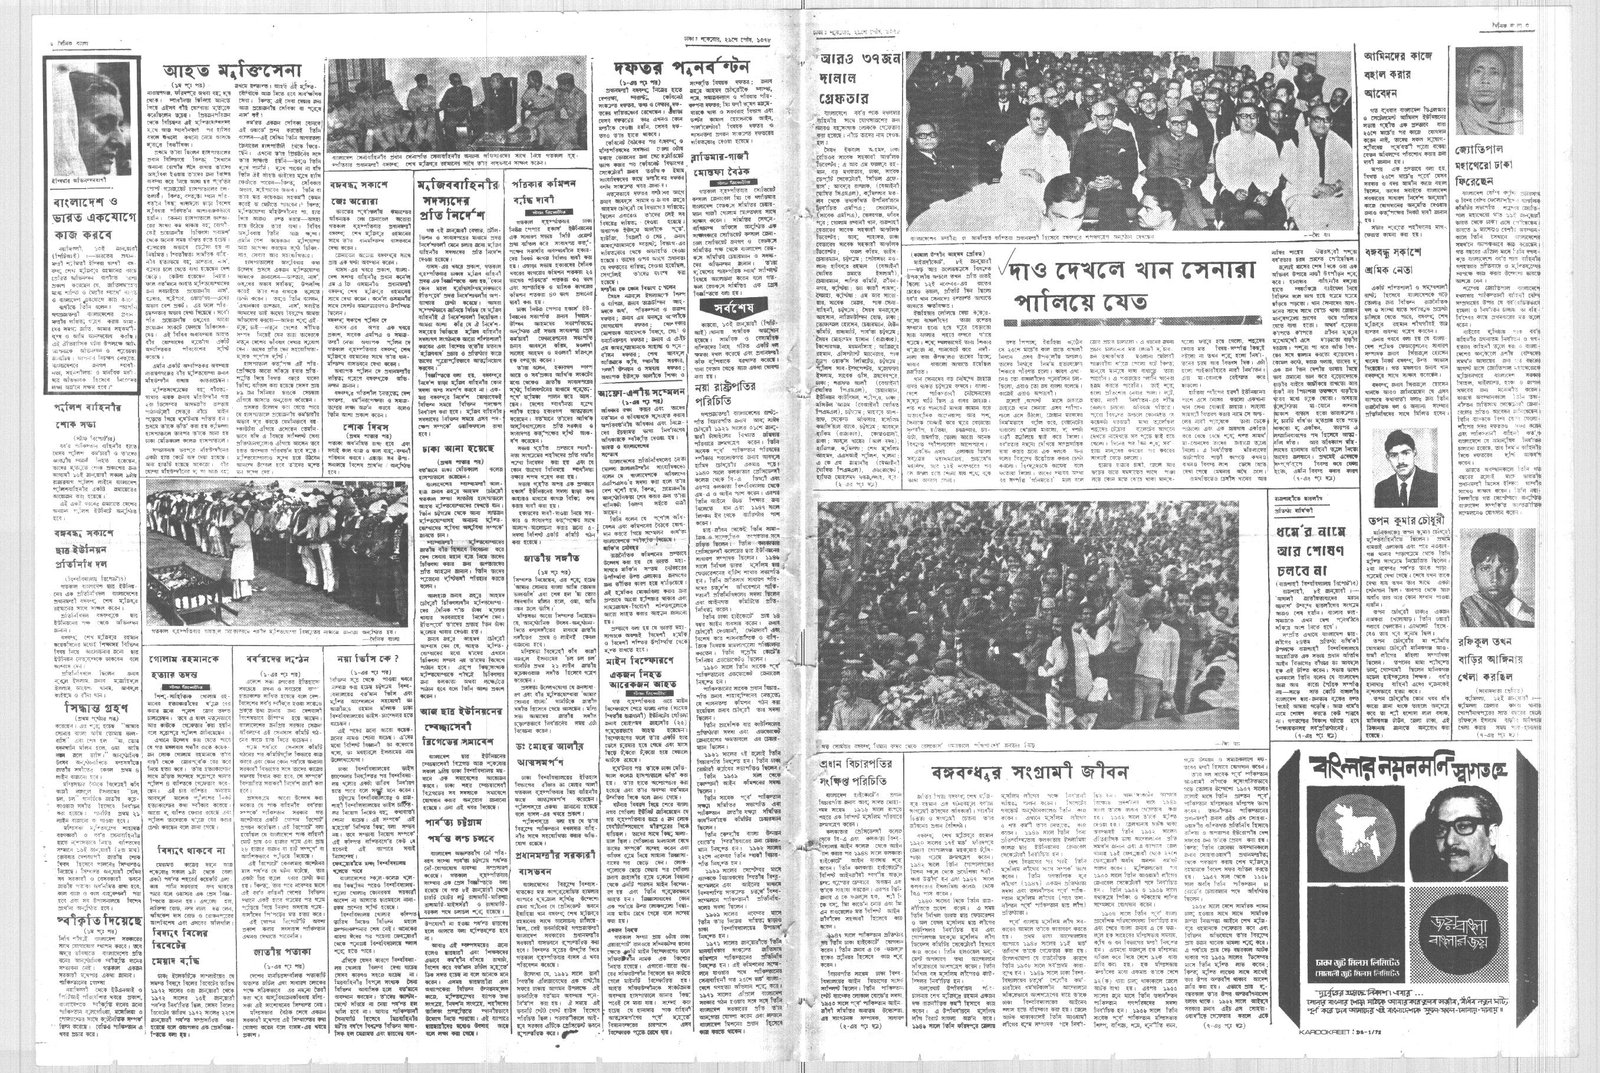 14JAN1972-DAINIK BANGLA-Regular-Page 3 and 6